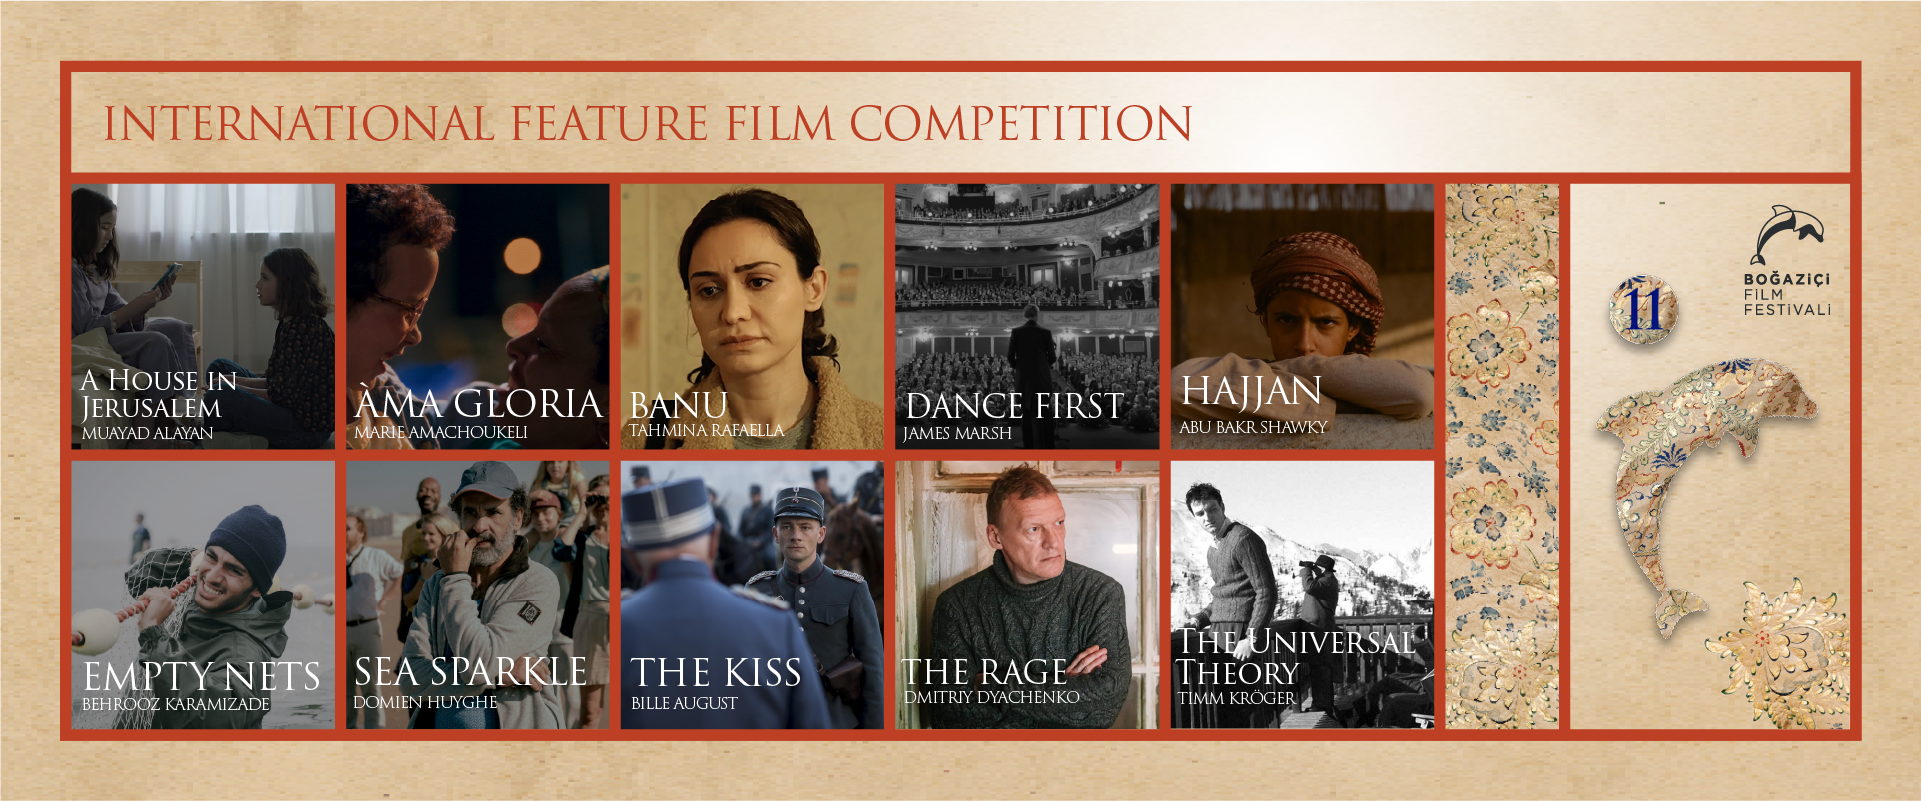 11. Boğaziçi Film Festivali’nin Uluslararası Yarışması’nda Yer Alan Filmler Açıklandı!